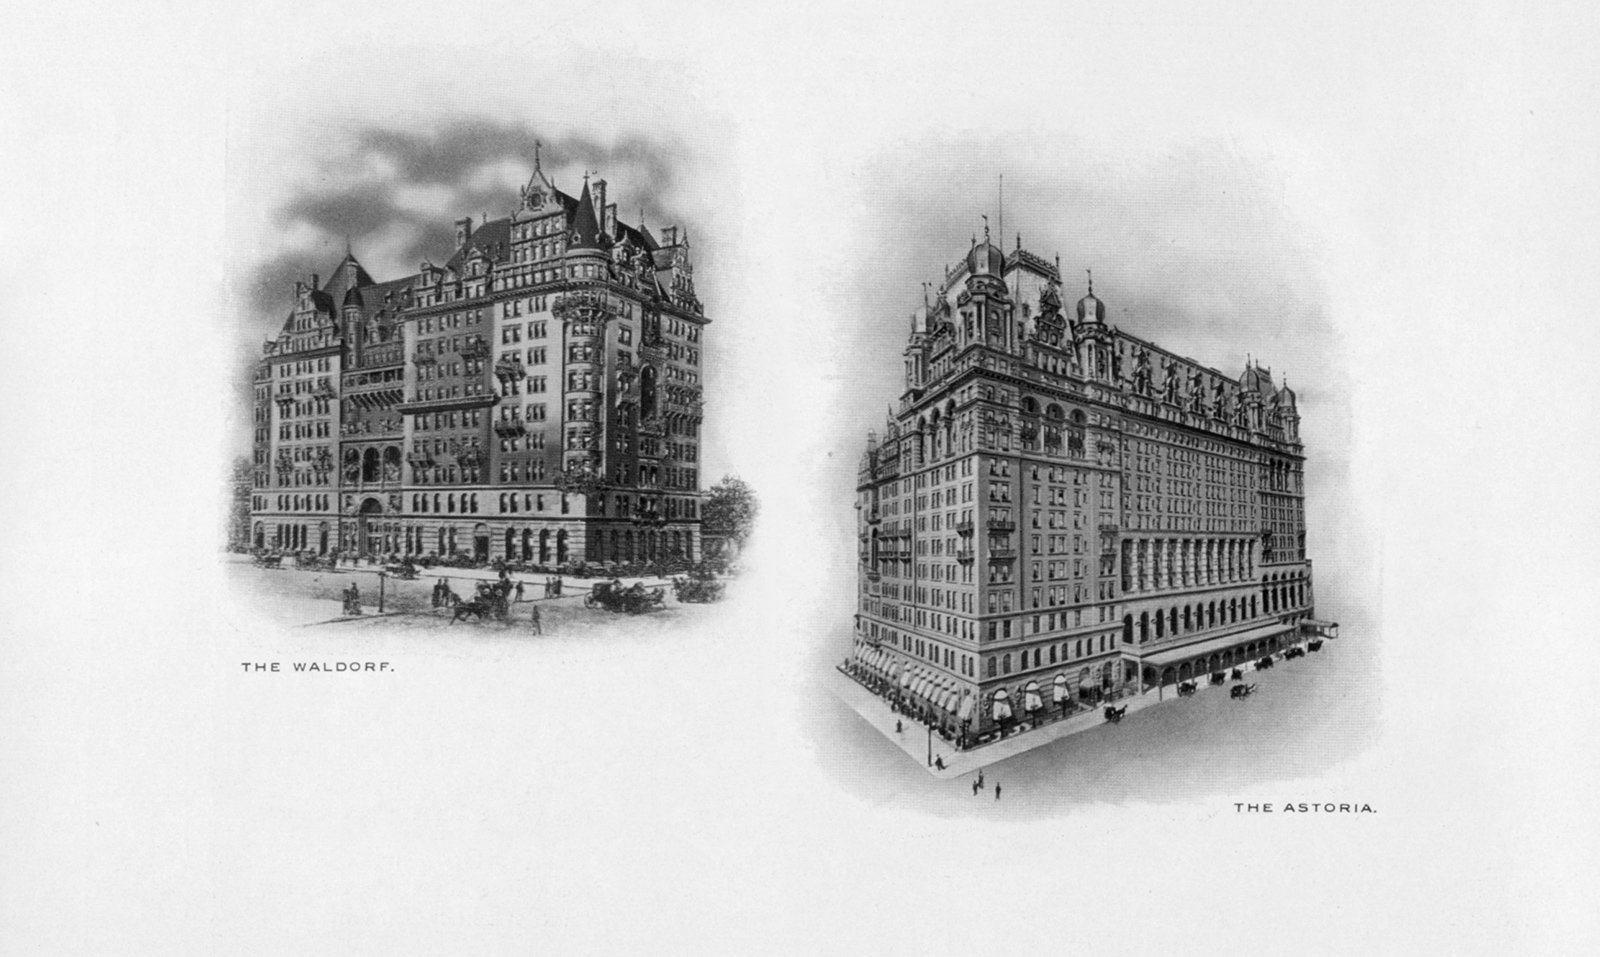 Открылся первый отель Waldorf, а отель Astoria по соседству открылся четыре года спустя - 1893 г.